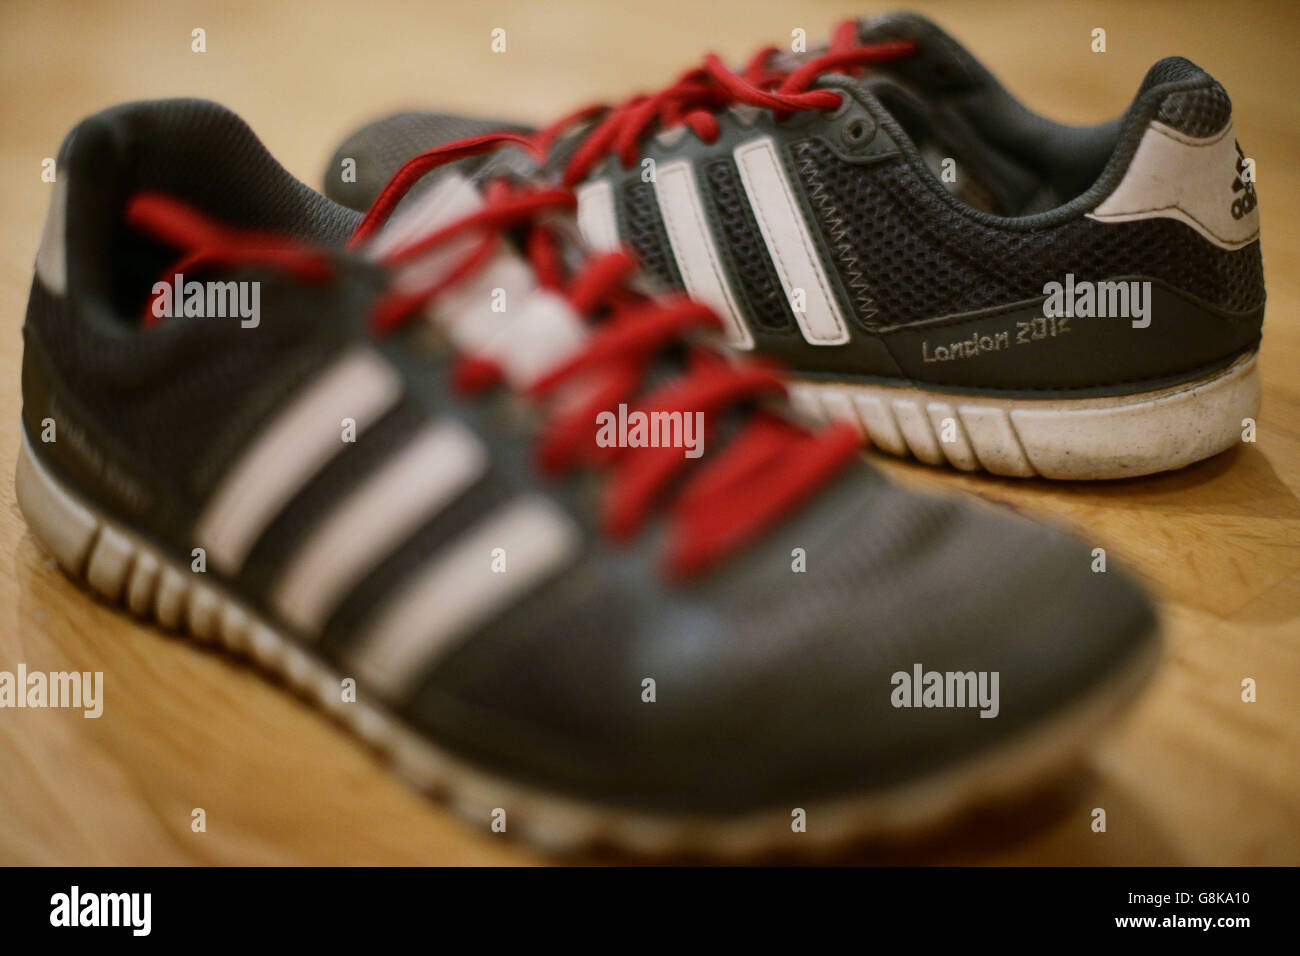 Un par de zapatillas de running Adidas de la Marca London 2012, Londres, ya que se ha informado de la compañía alemana de ropa deportiva ha terminado su contrato de patrocinio